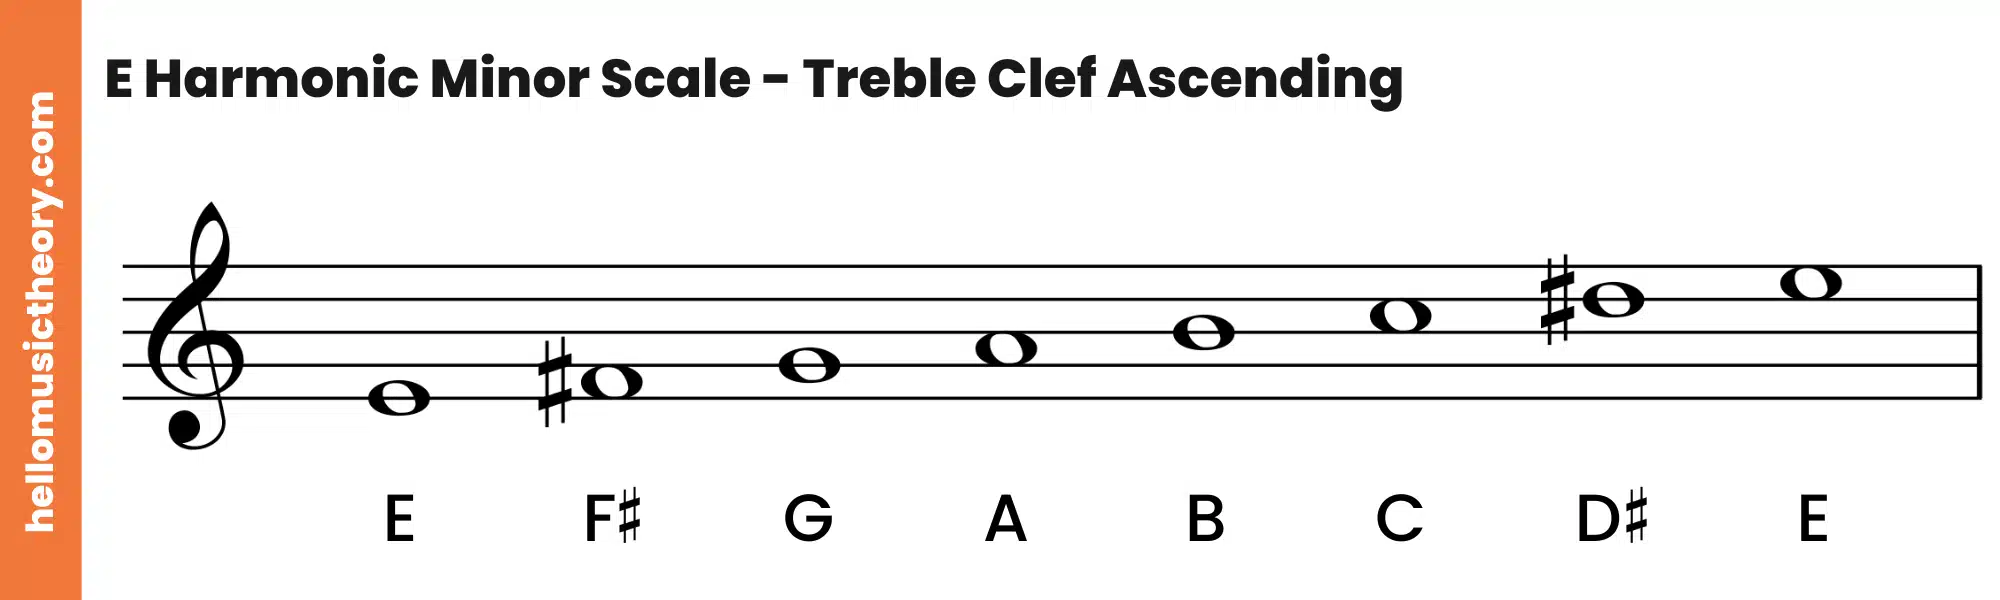 E Harmonic Minor Scale Treble Clef Ascending